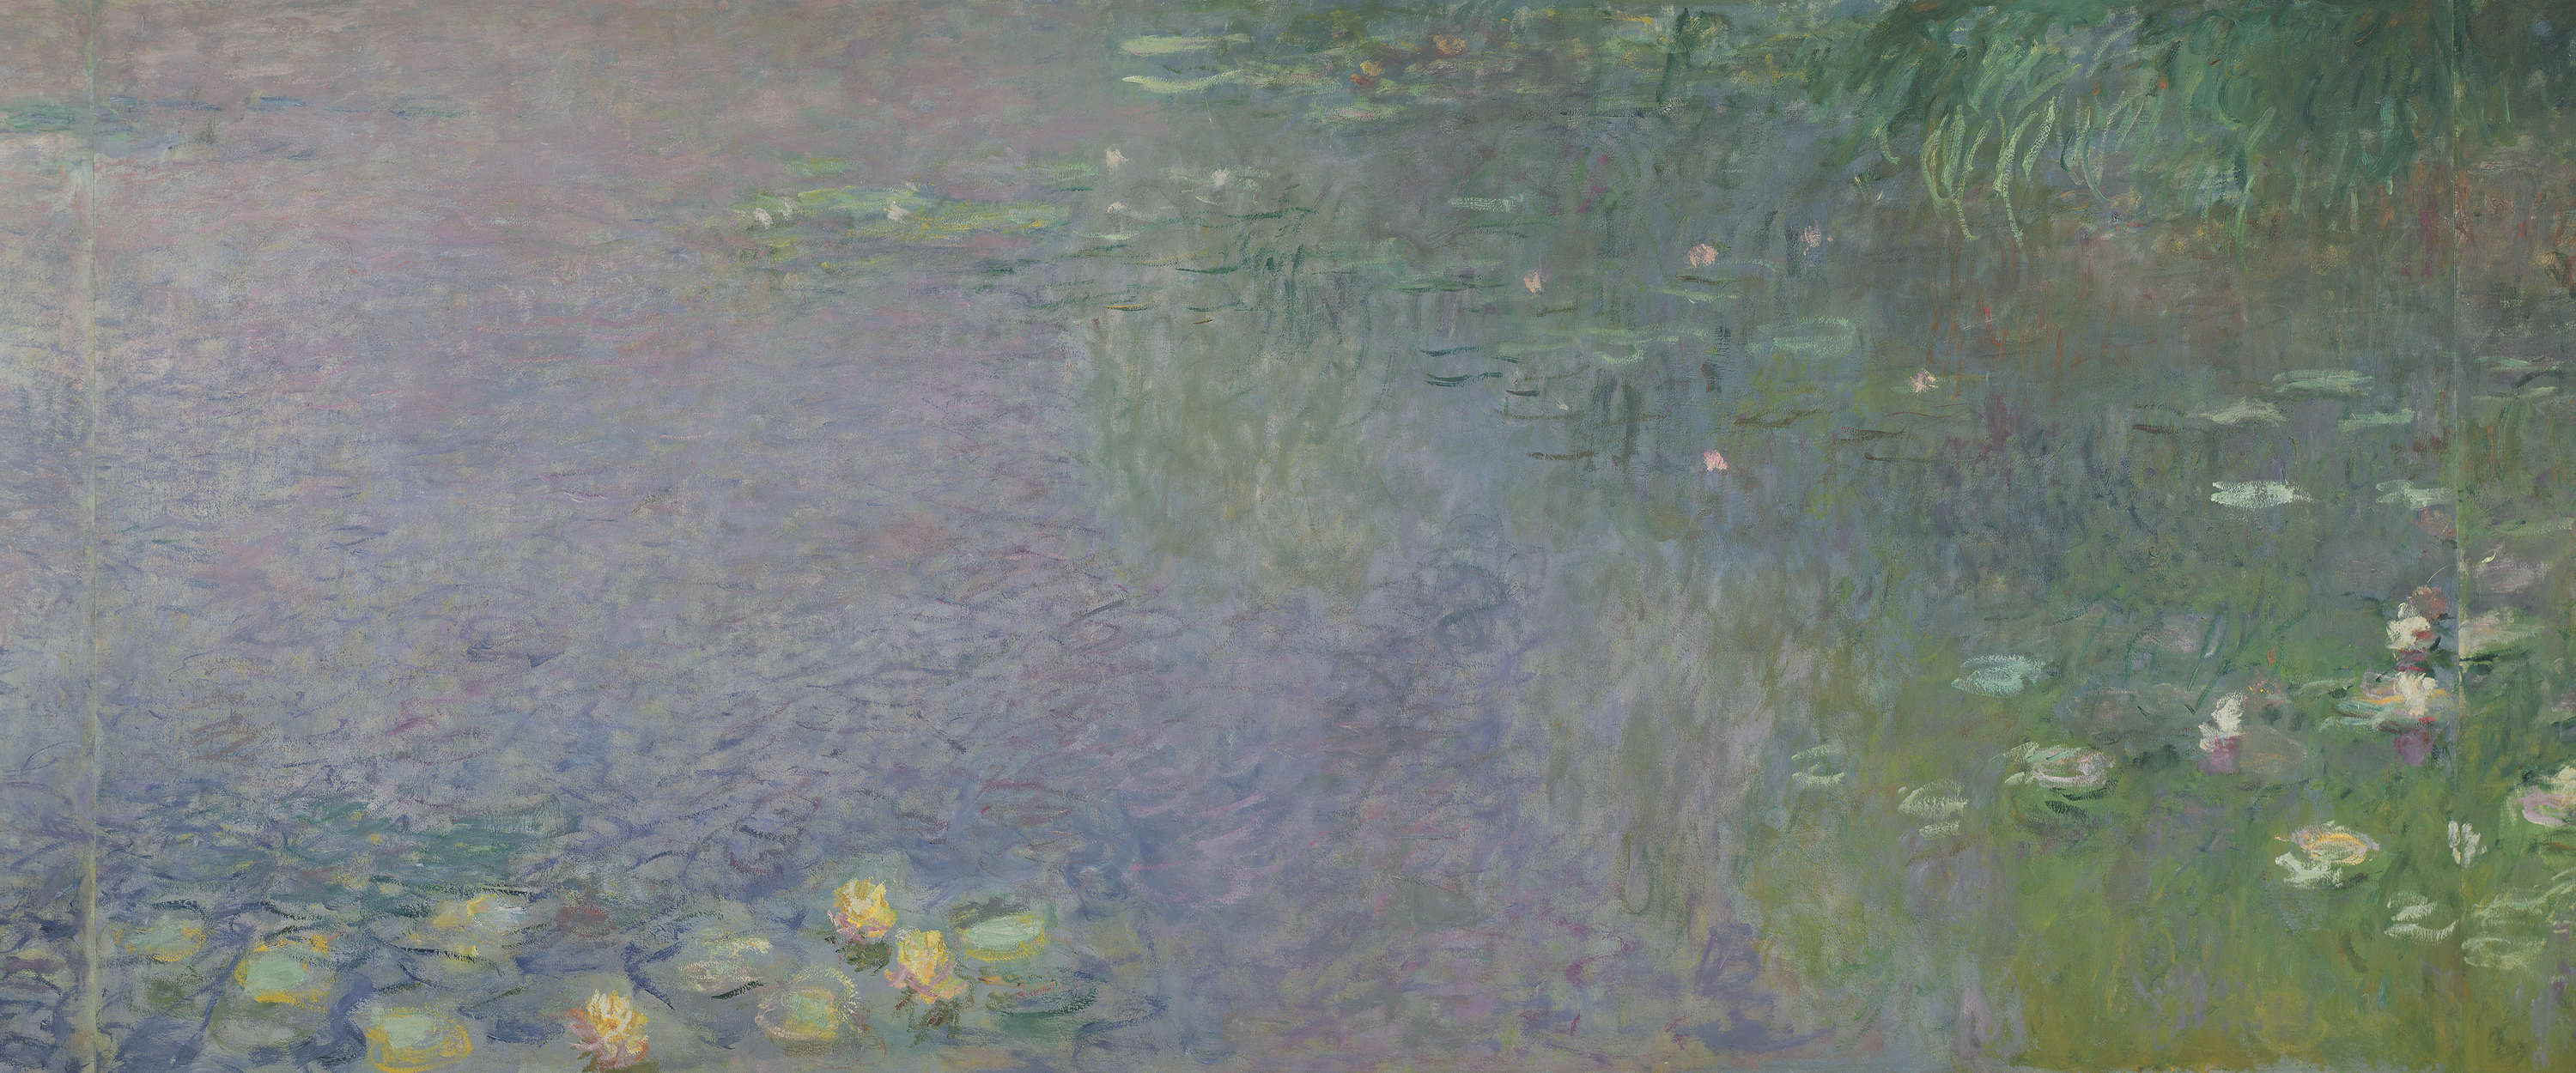             Ninfee: mattino" murale di Claude Monet
        